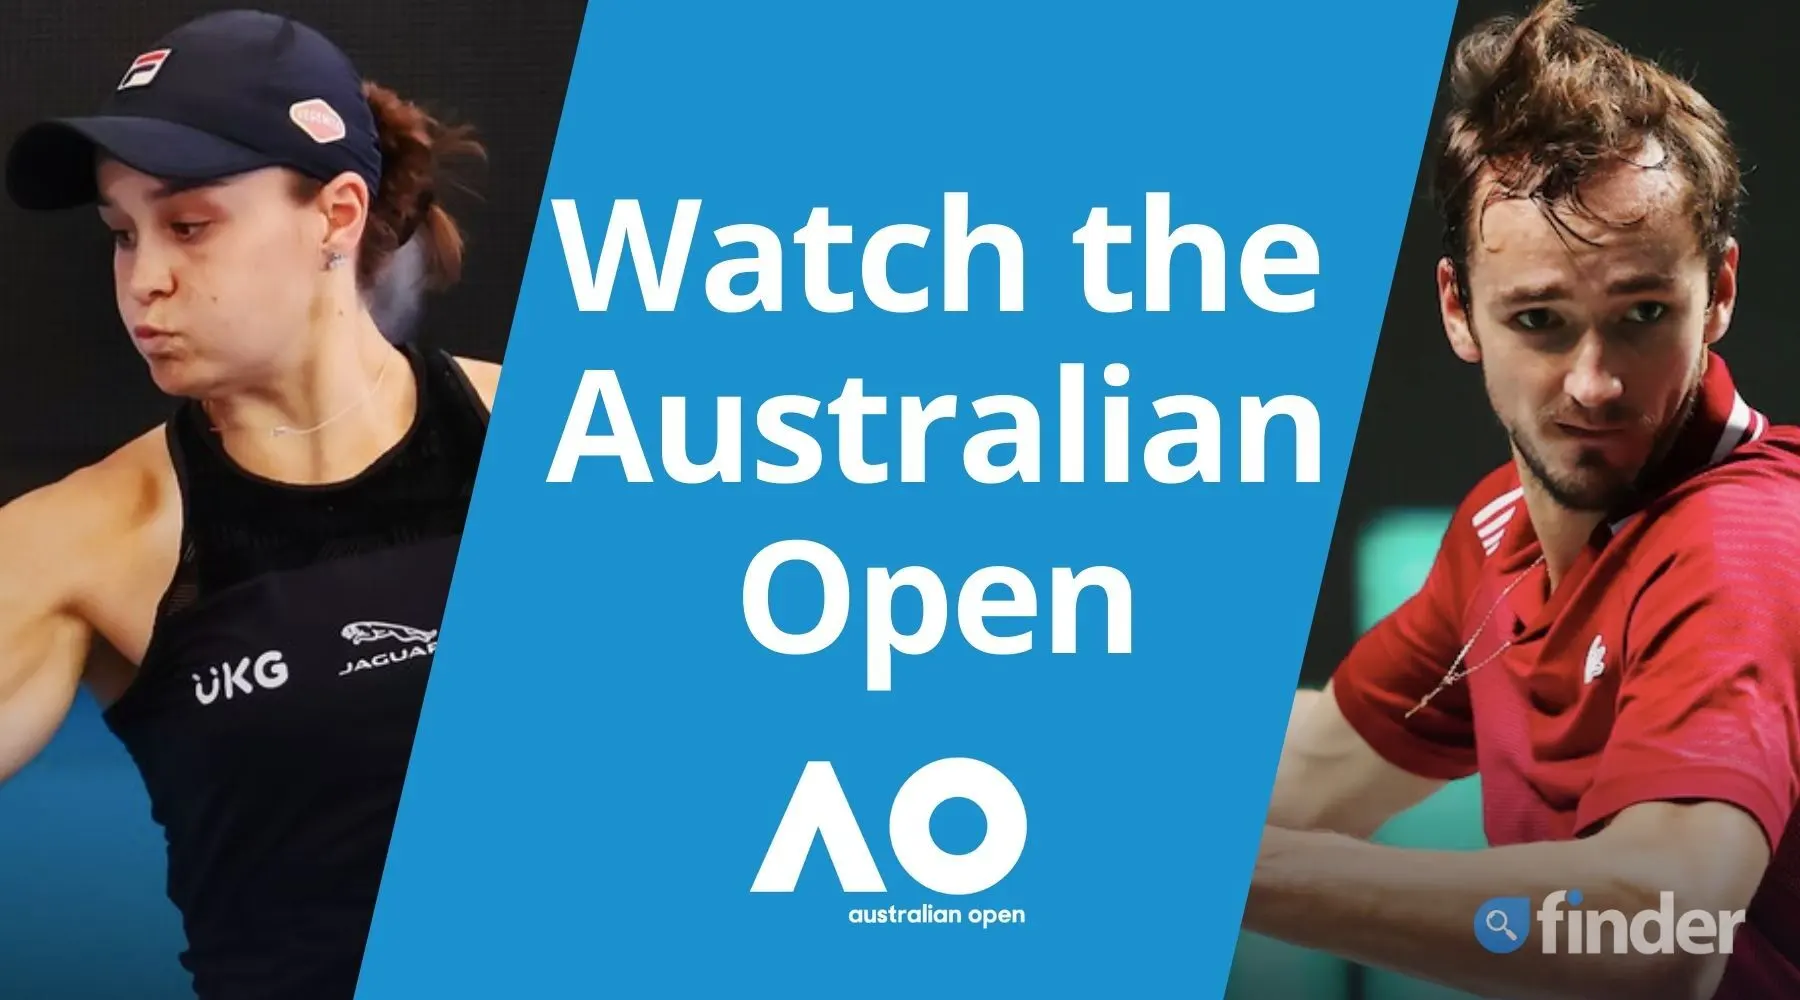 watch australian open 2022 online